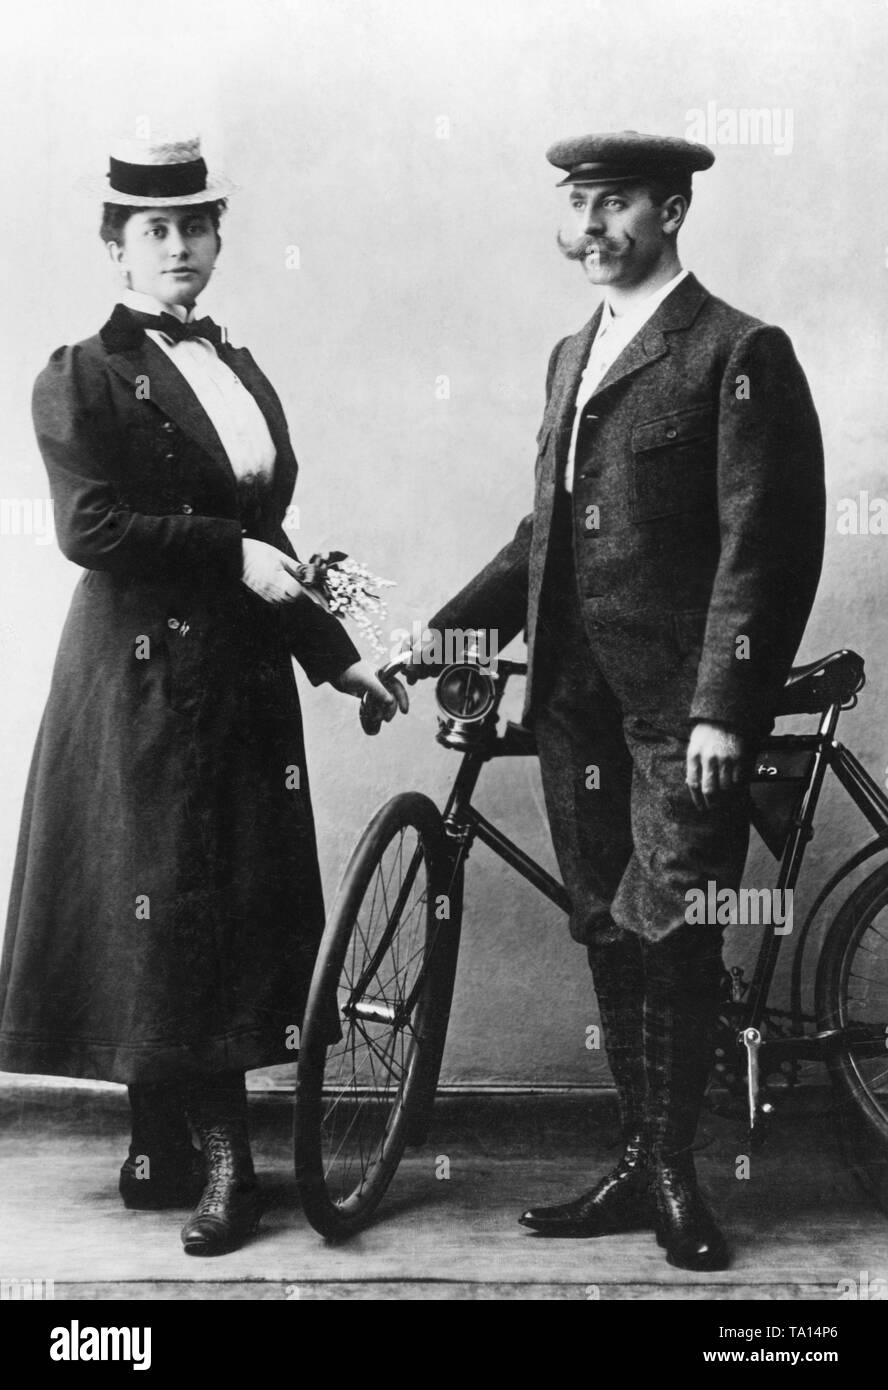 Elegante Radfahrer Paar in der Porty' Kleidung. Das Fahrrad hat einen Karbid Lampe vor. Undatiertes Foto. Stockfoto